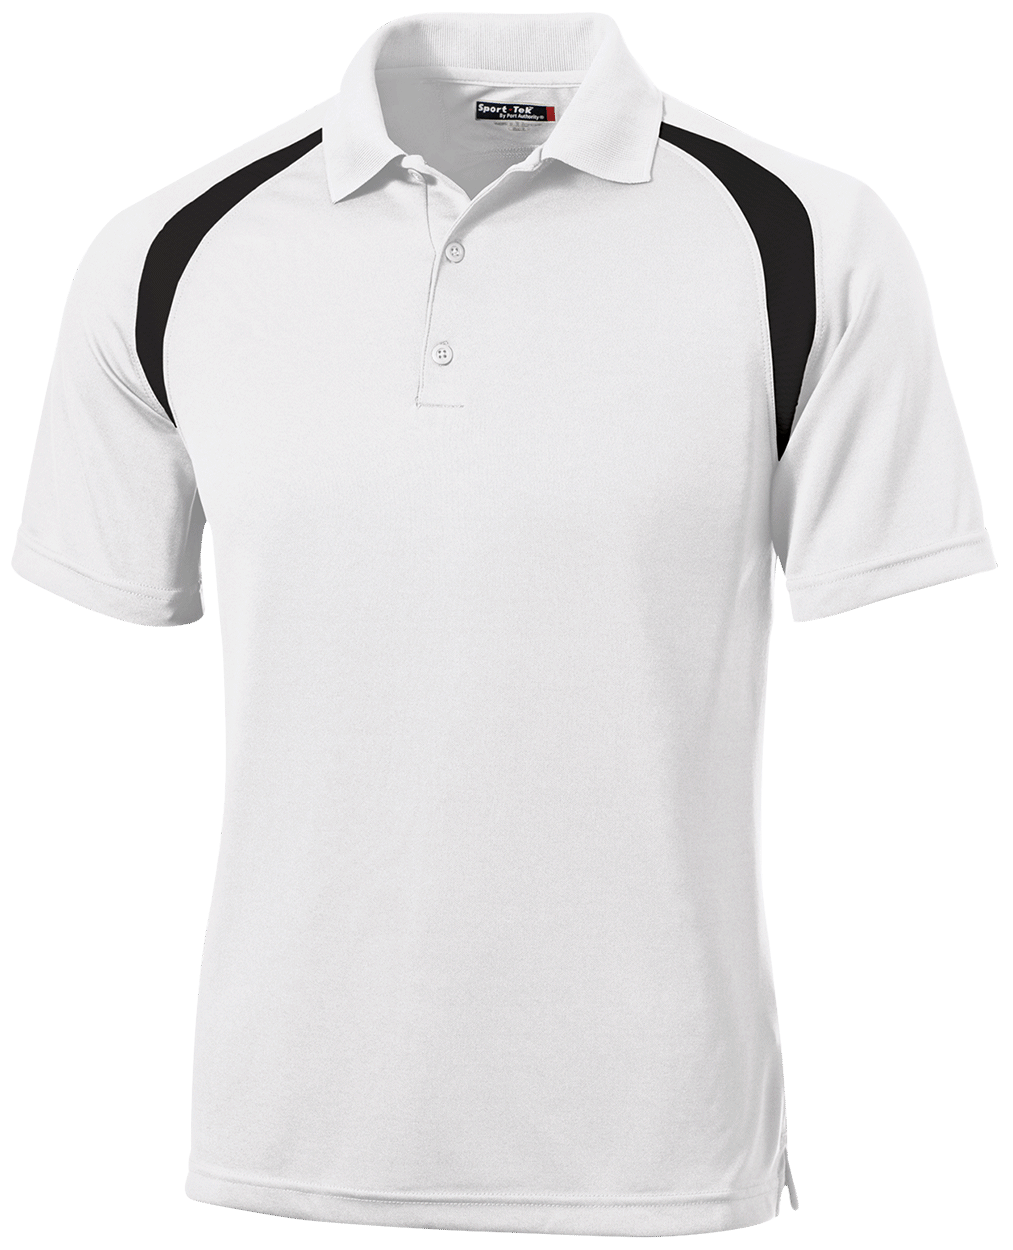 T476 Moisture-Wicking Tag-Free Golf Shirt - Sport Tek - CustomCat